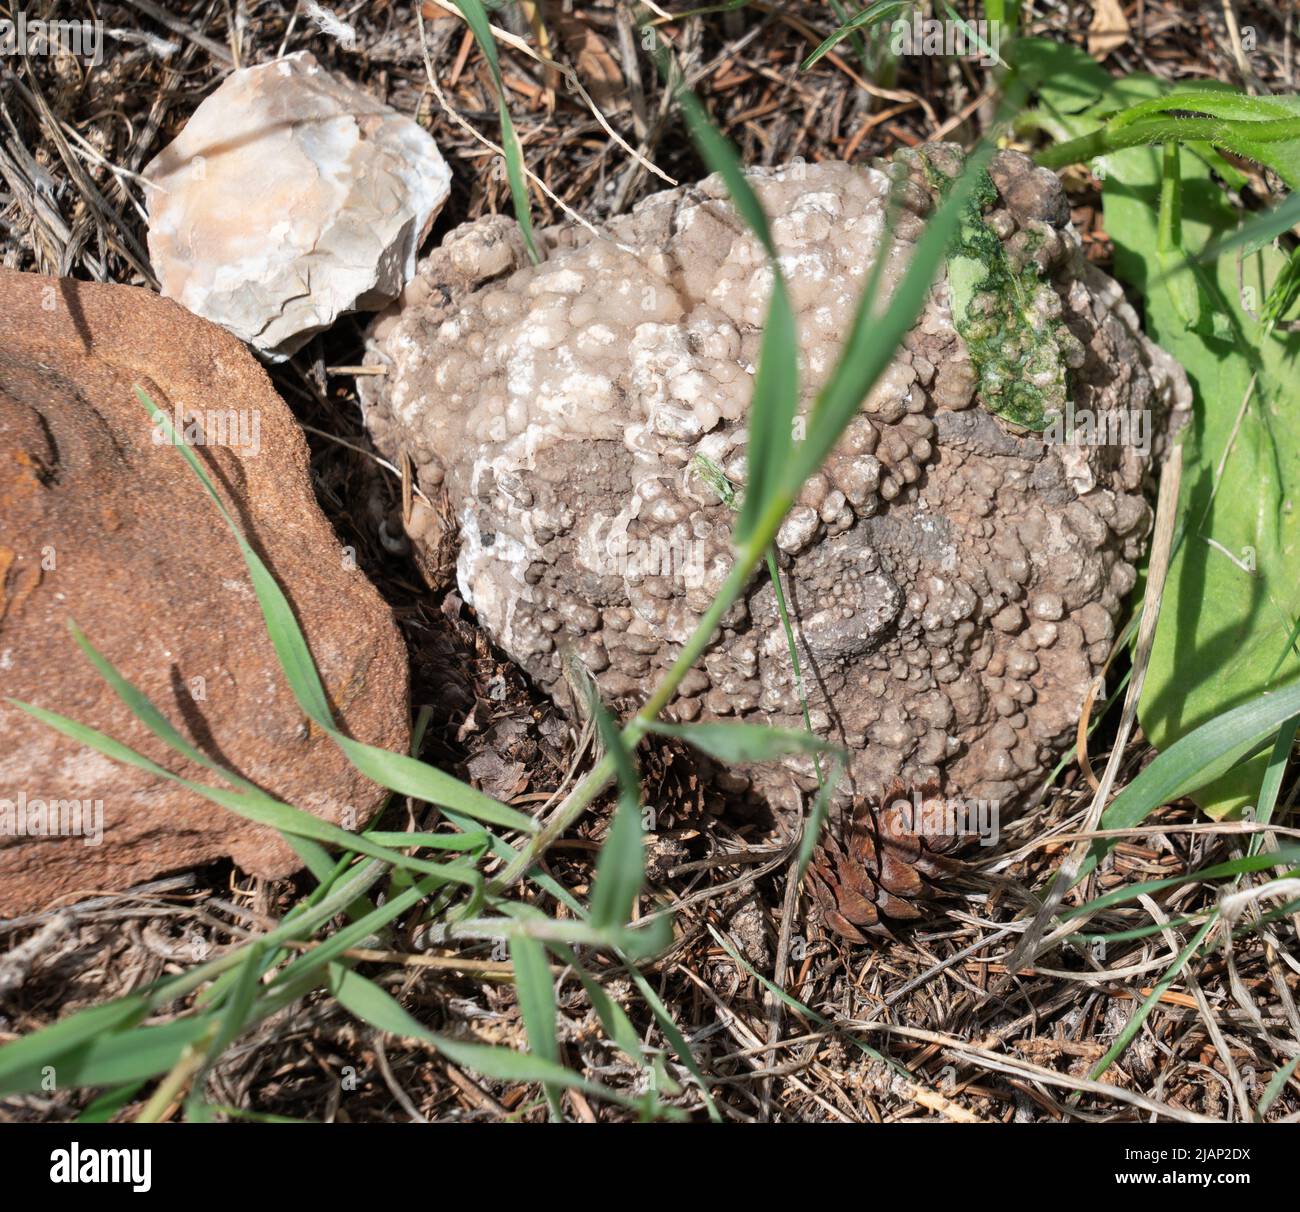 Sehen Sie Fossilgestein, das einen grün gehärteten Gesteinskörper eines Salamanders oder Frosches erleuchtet. Sehen Sie seinen Kopf und Körper auf dem grauen Felsen. Gefunden in Shell, WY. Stockfoto